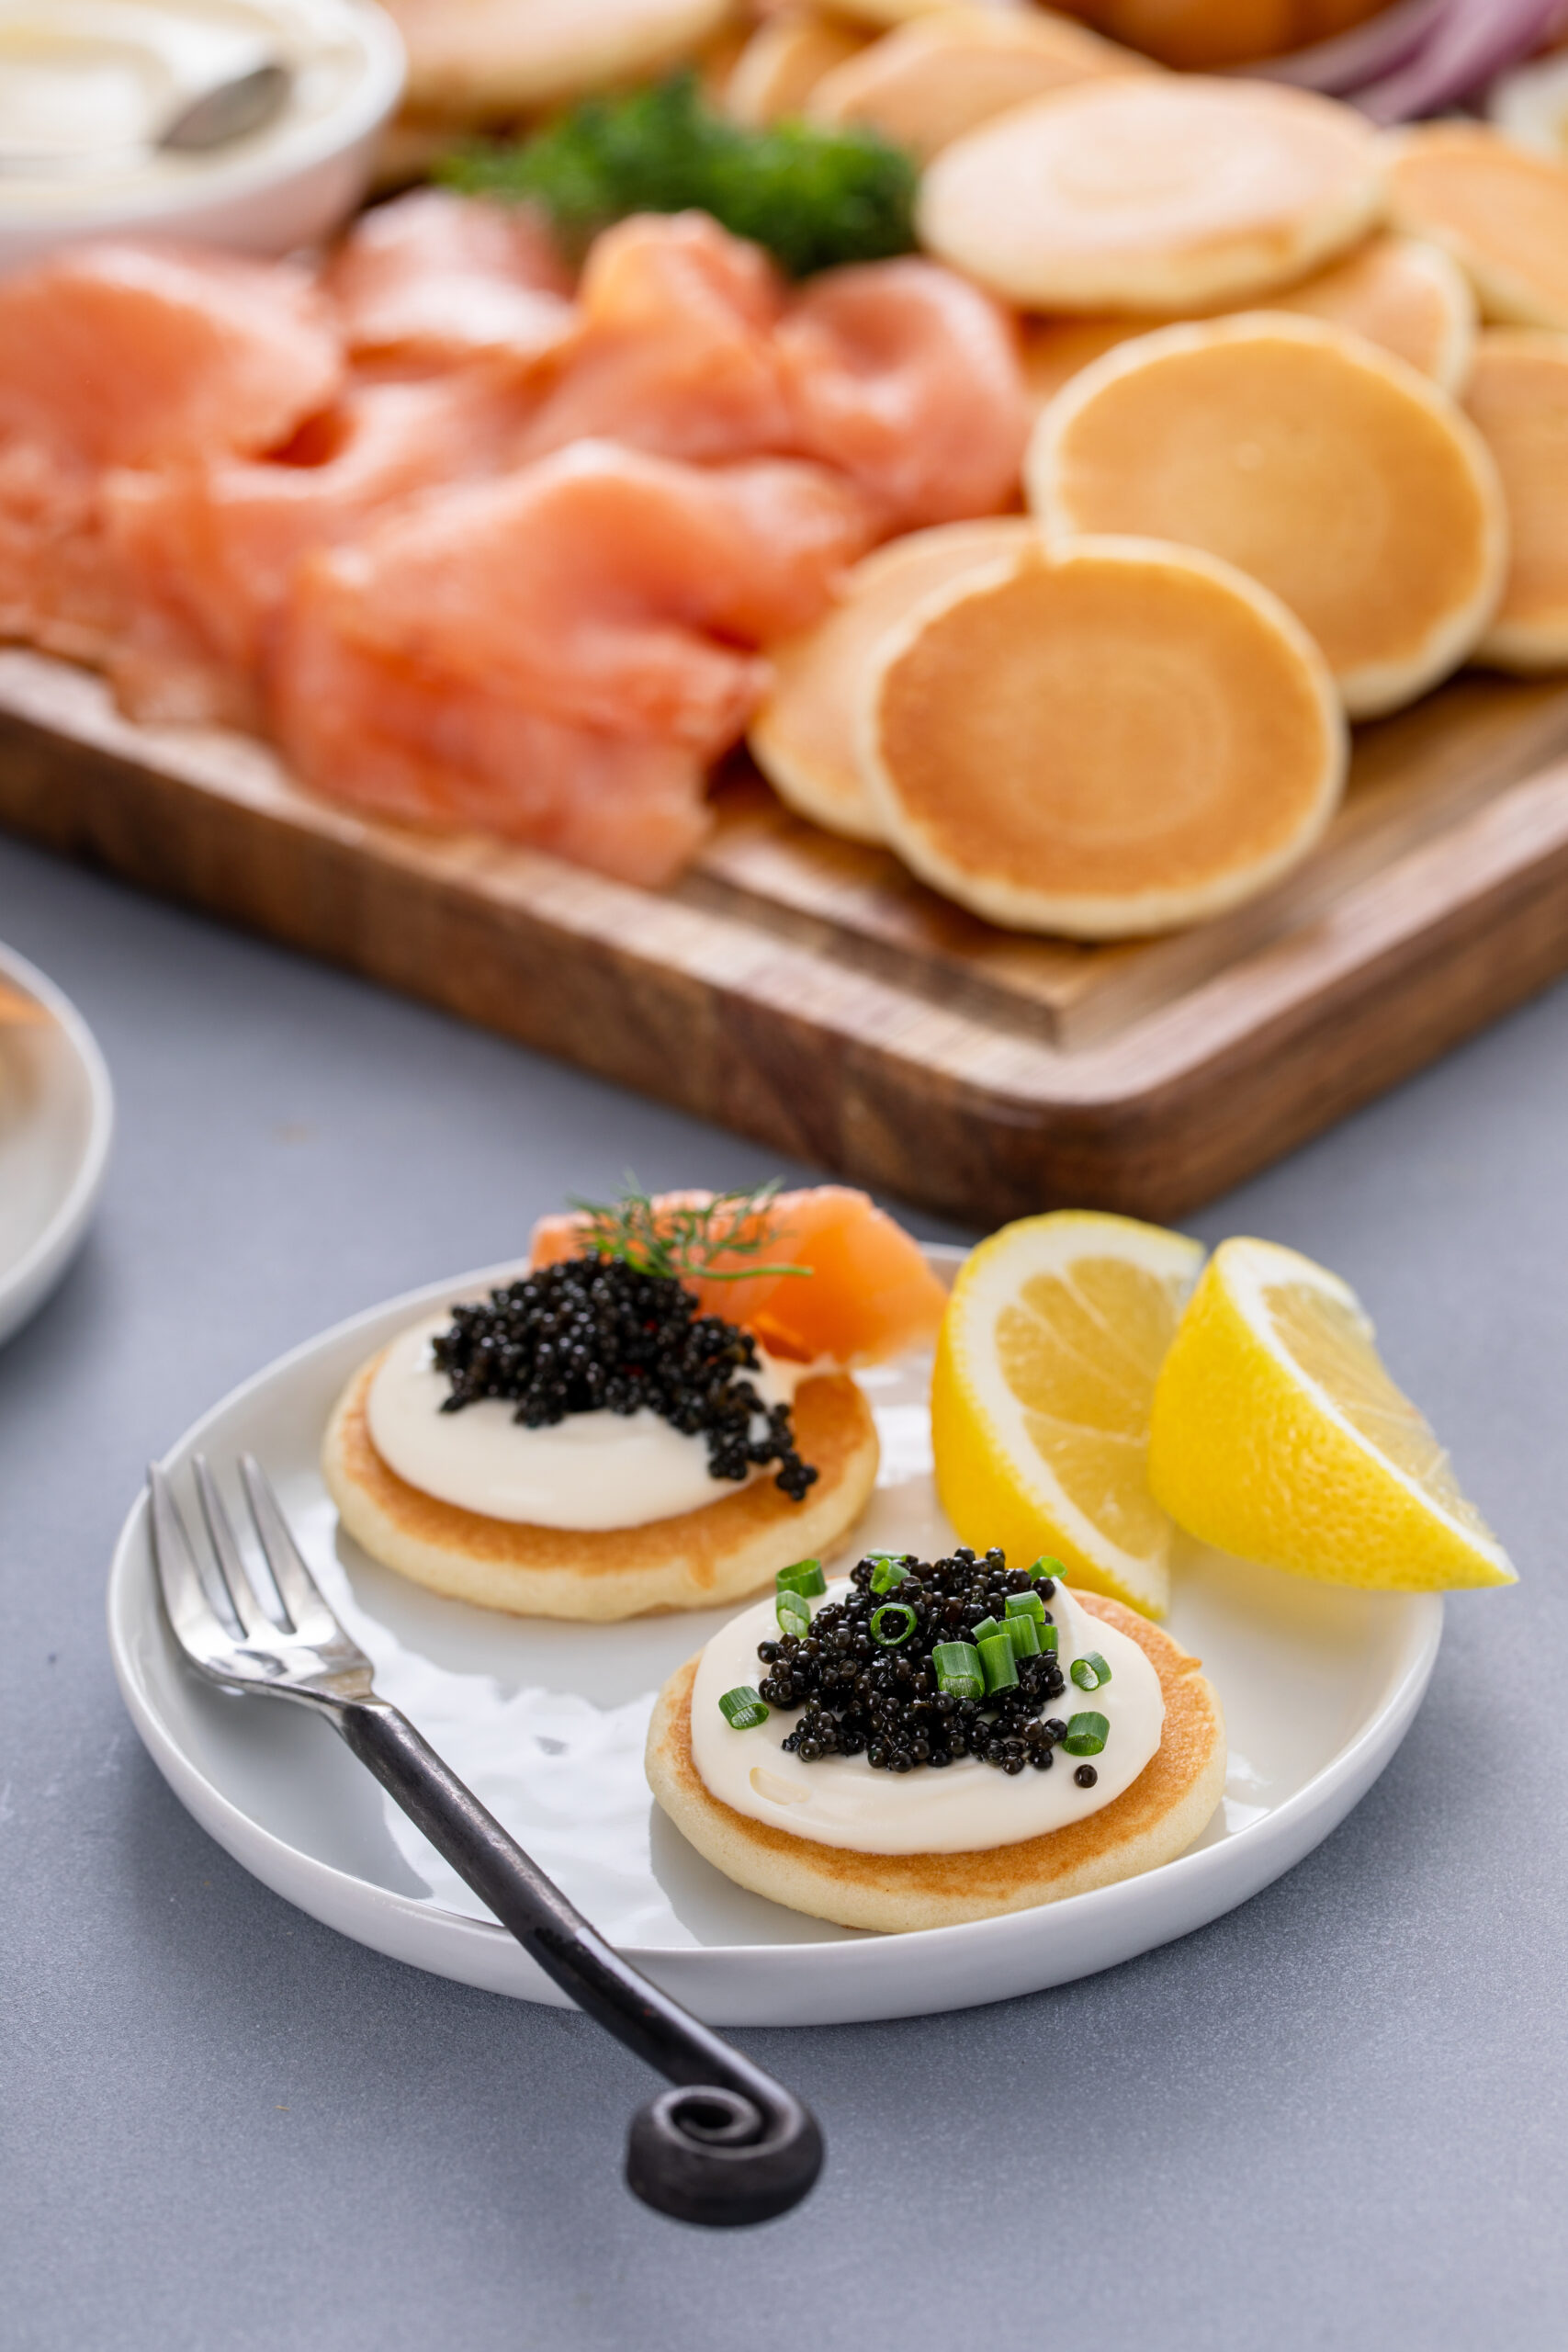 How to Serve Caviar, Caviar Pairings